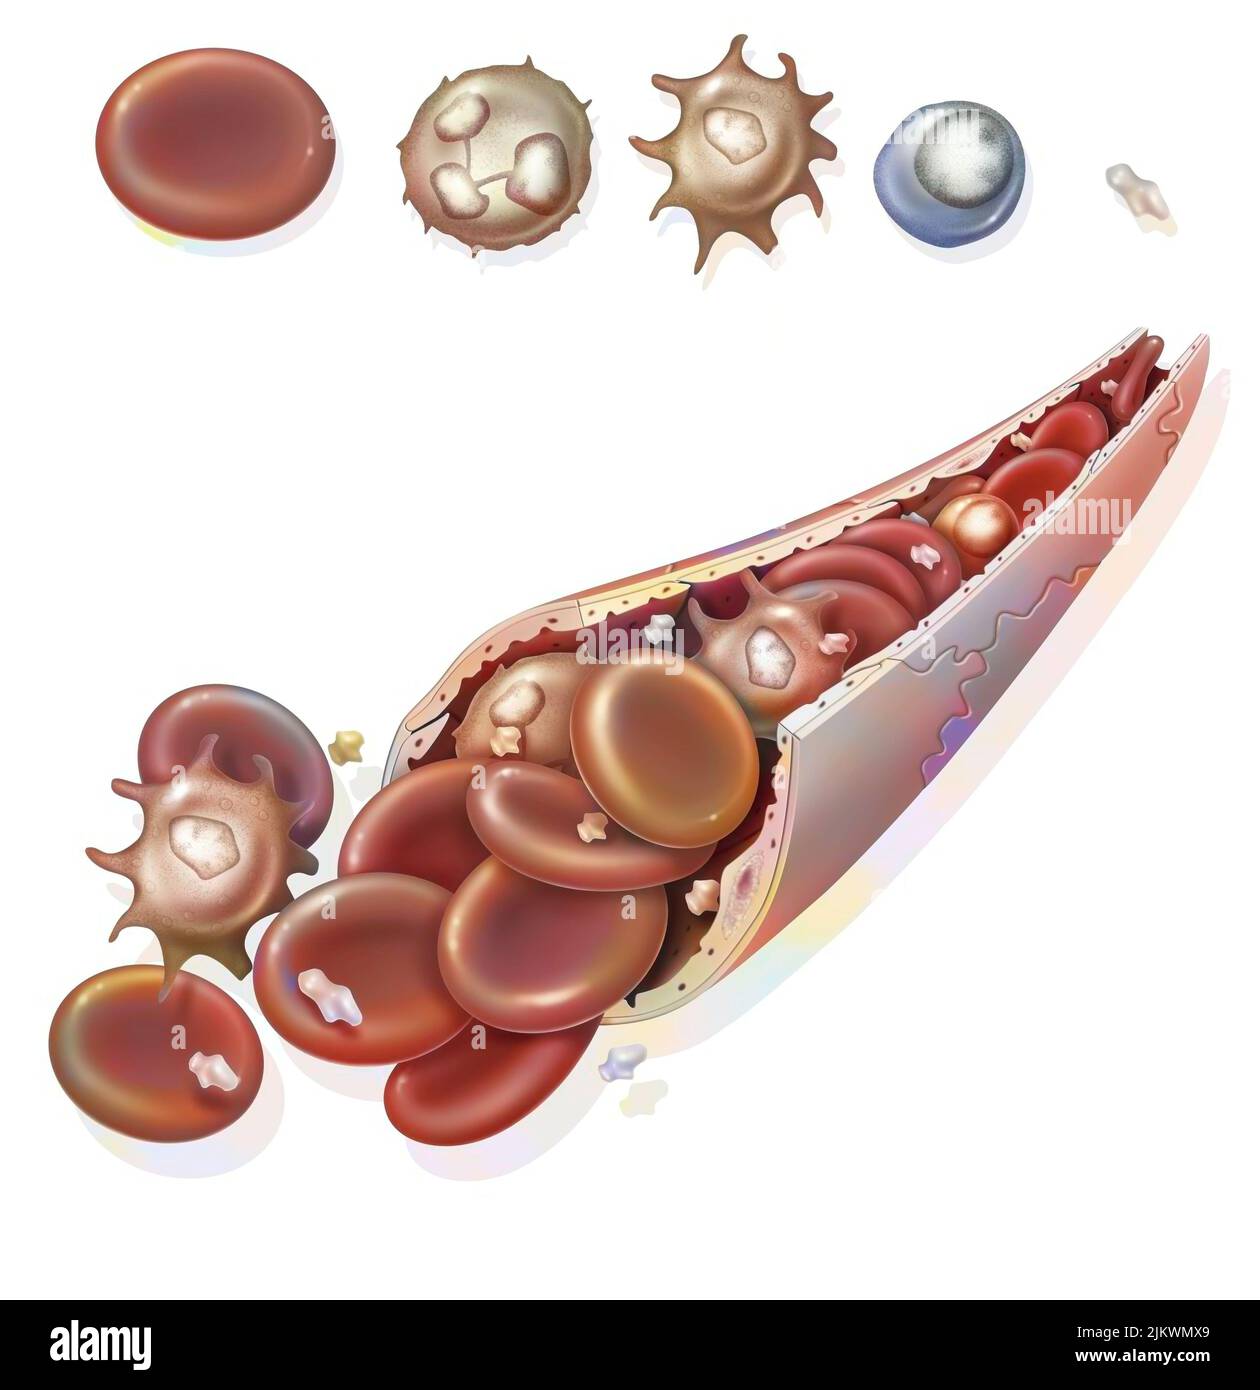 Zusammensetzung des Blutes (Blutkapillare): Rote Blutkörperchen, weiße Blutkörperchen. Stockfoto